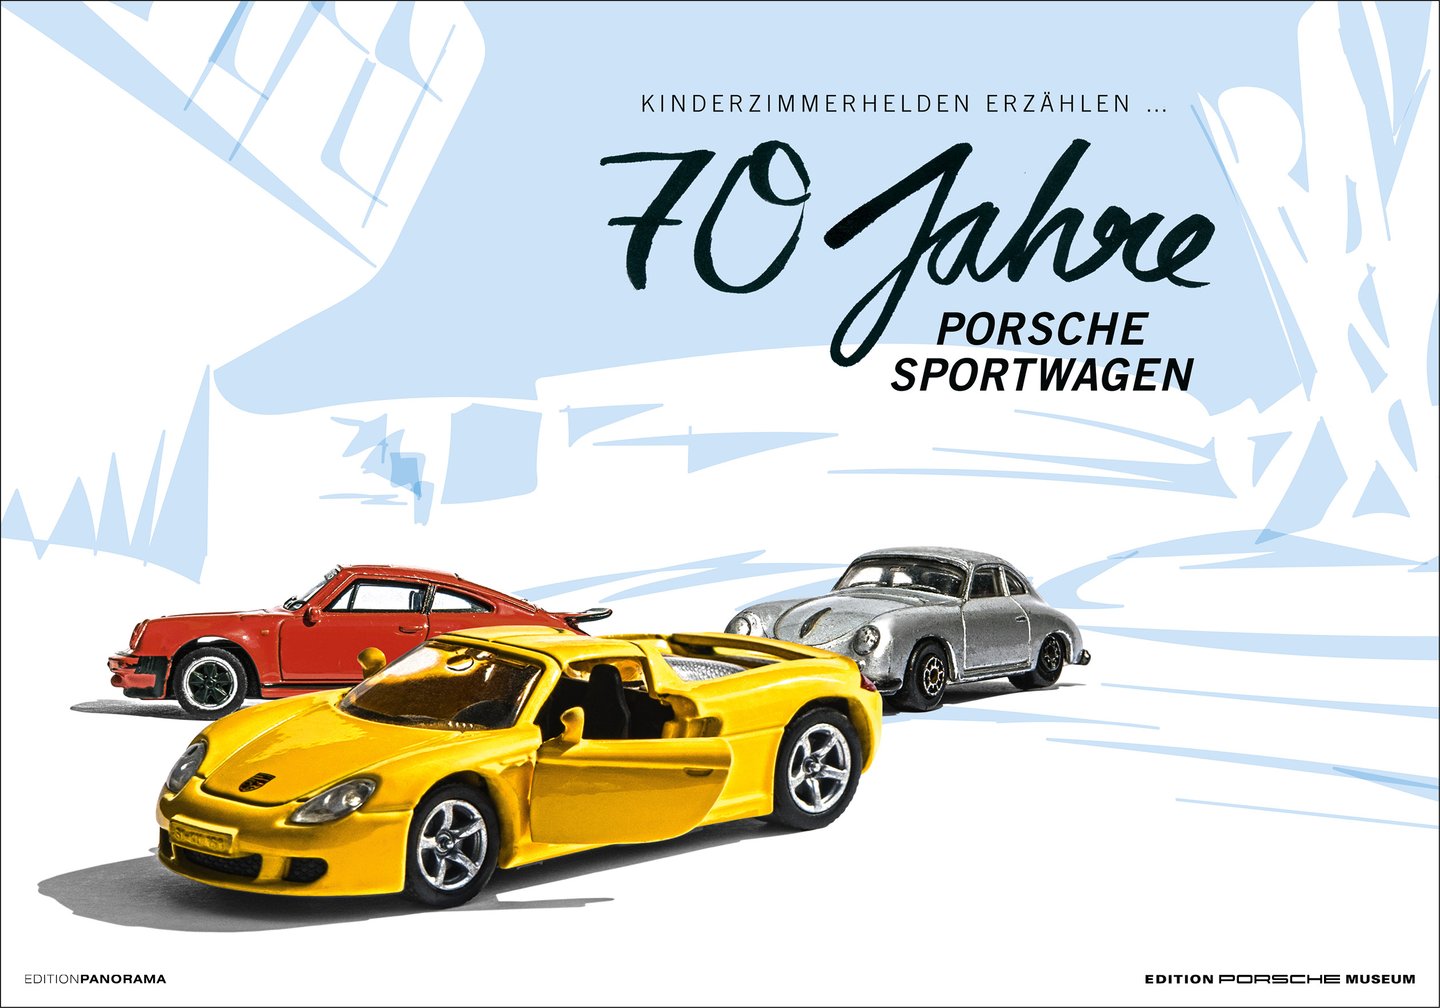 Kinderzimmerhelden | Edition 70 Jahre Porsche Sportwagen